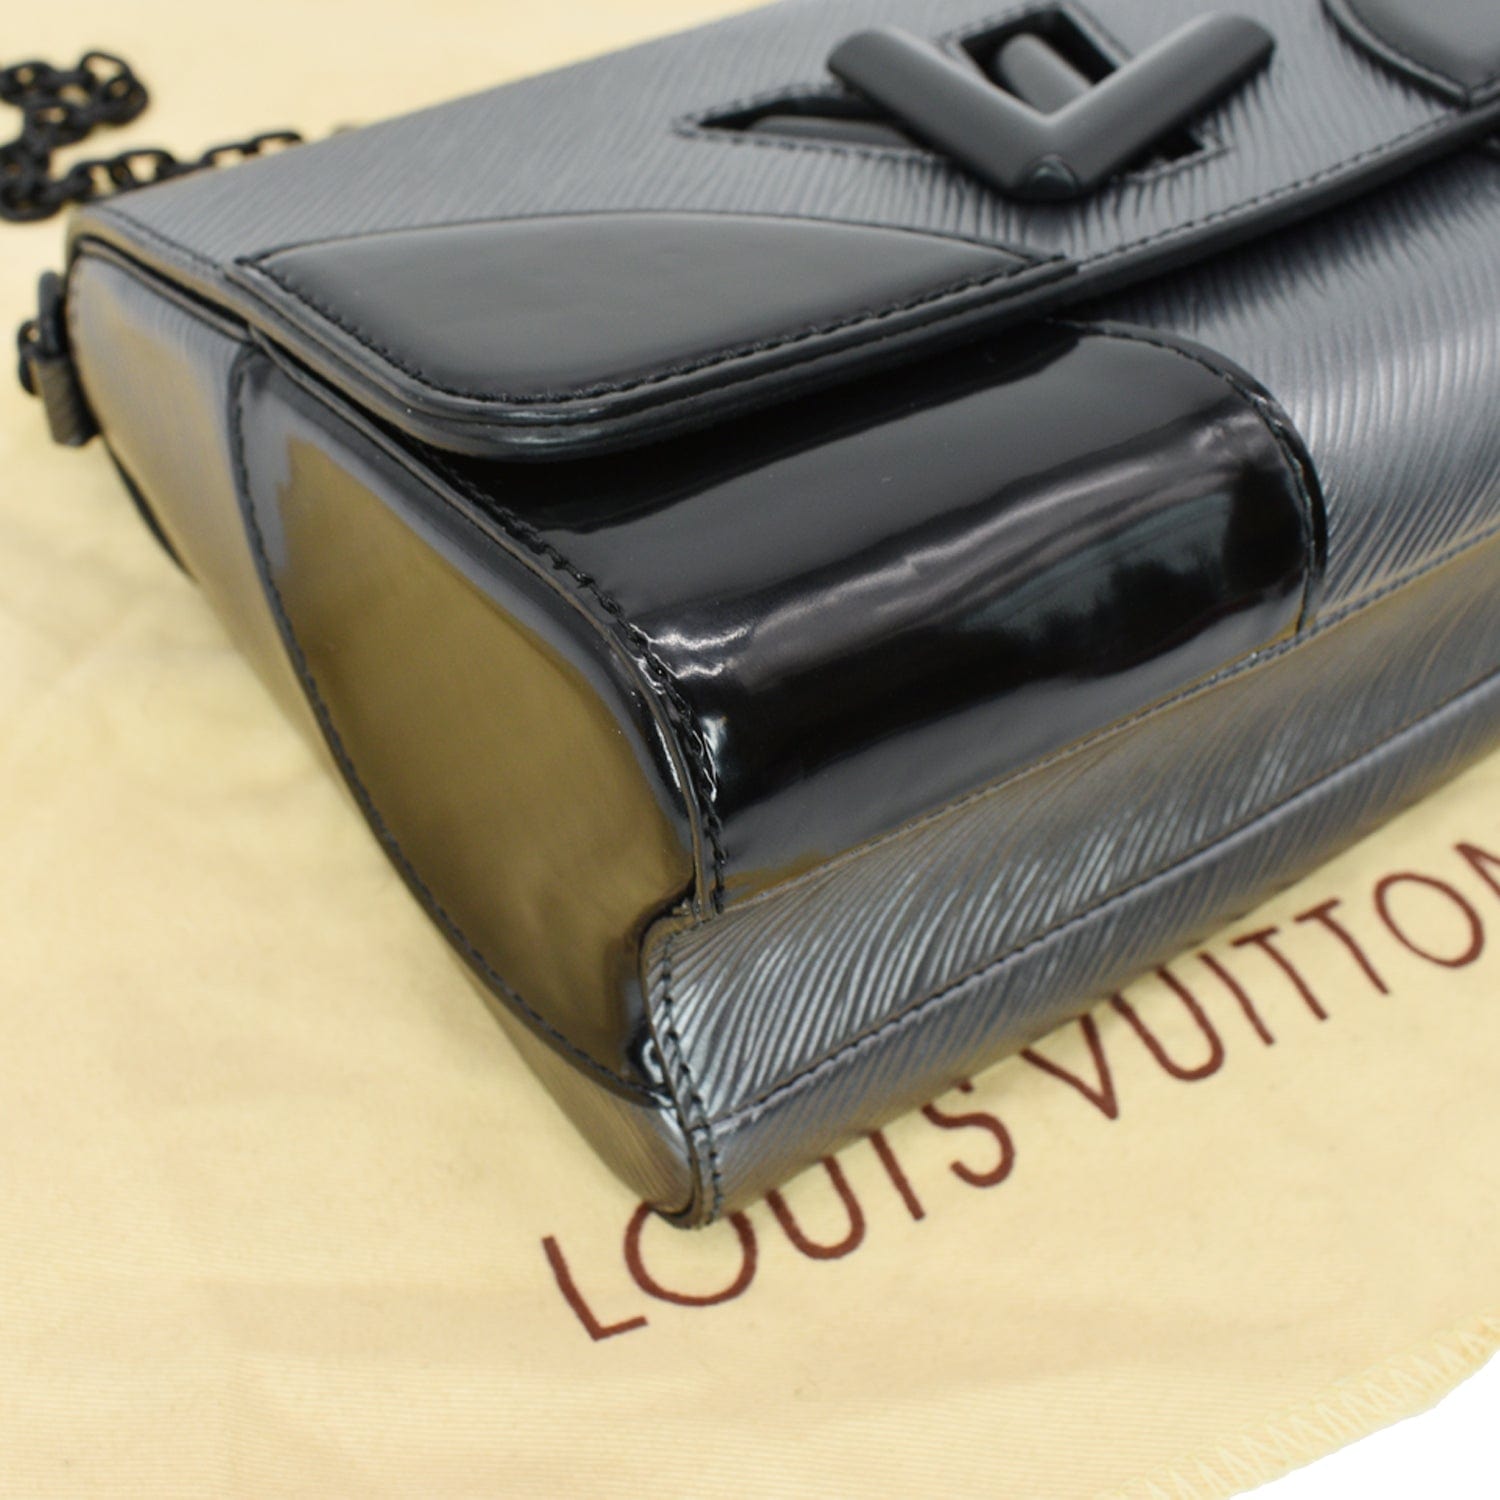 Louis Vuitton Twist Patent Shoulder Bag in Black Patent Leather